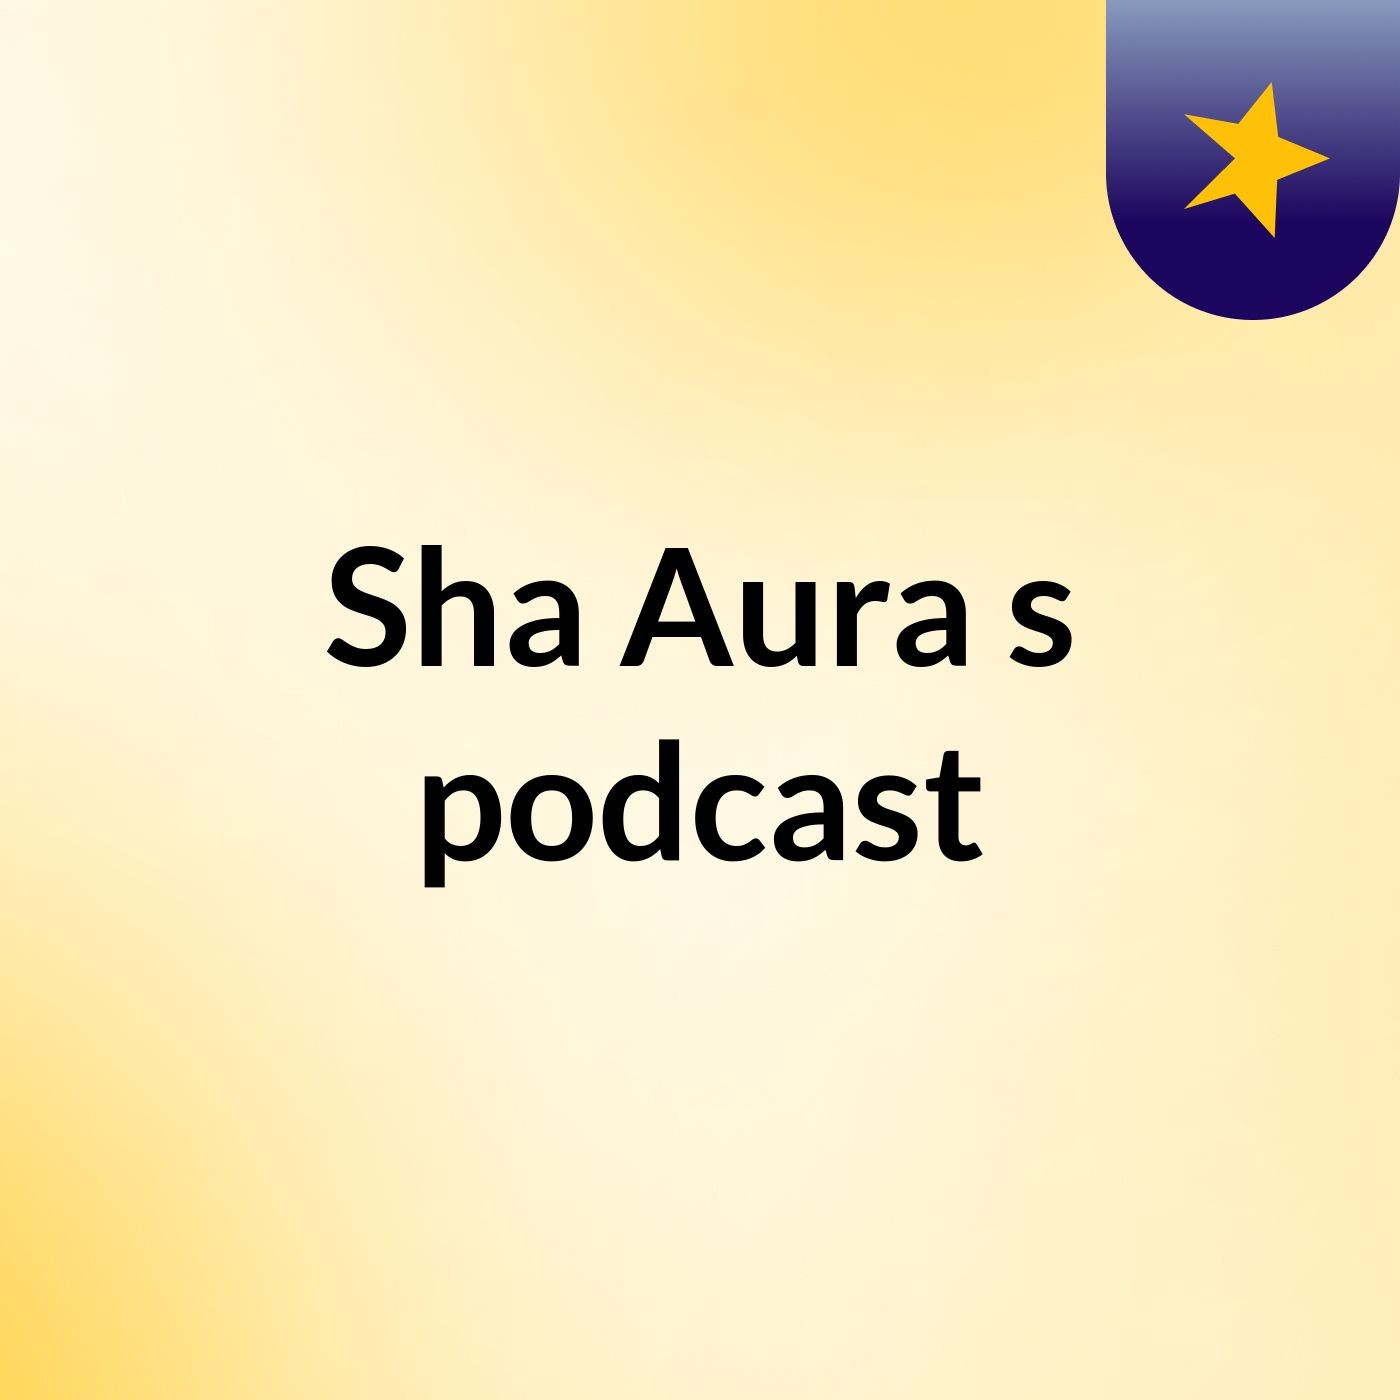 Sha Aura's podcast